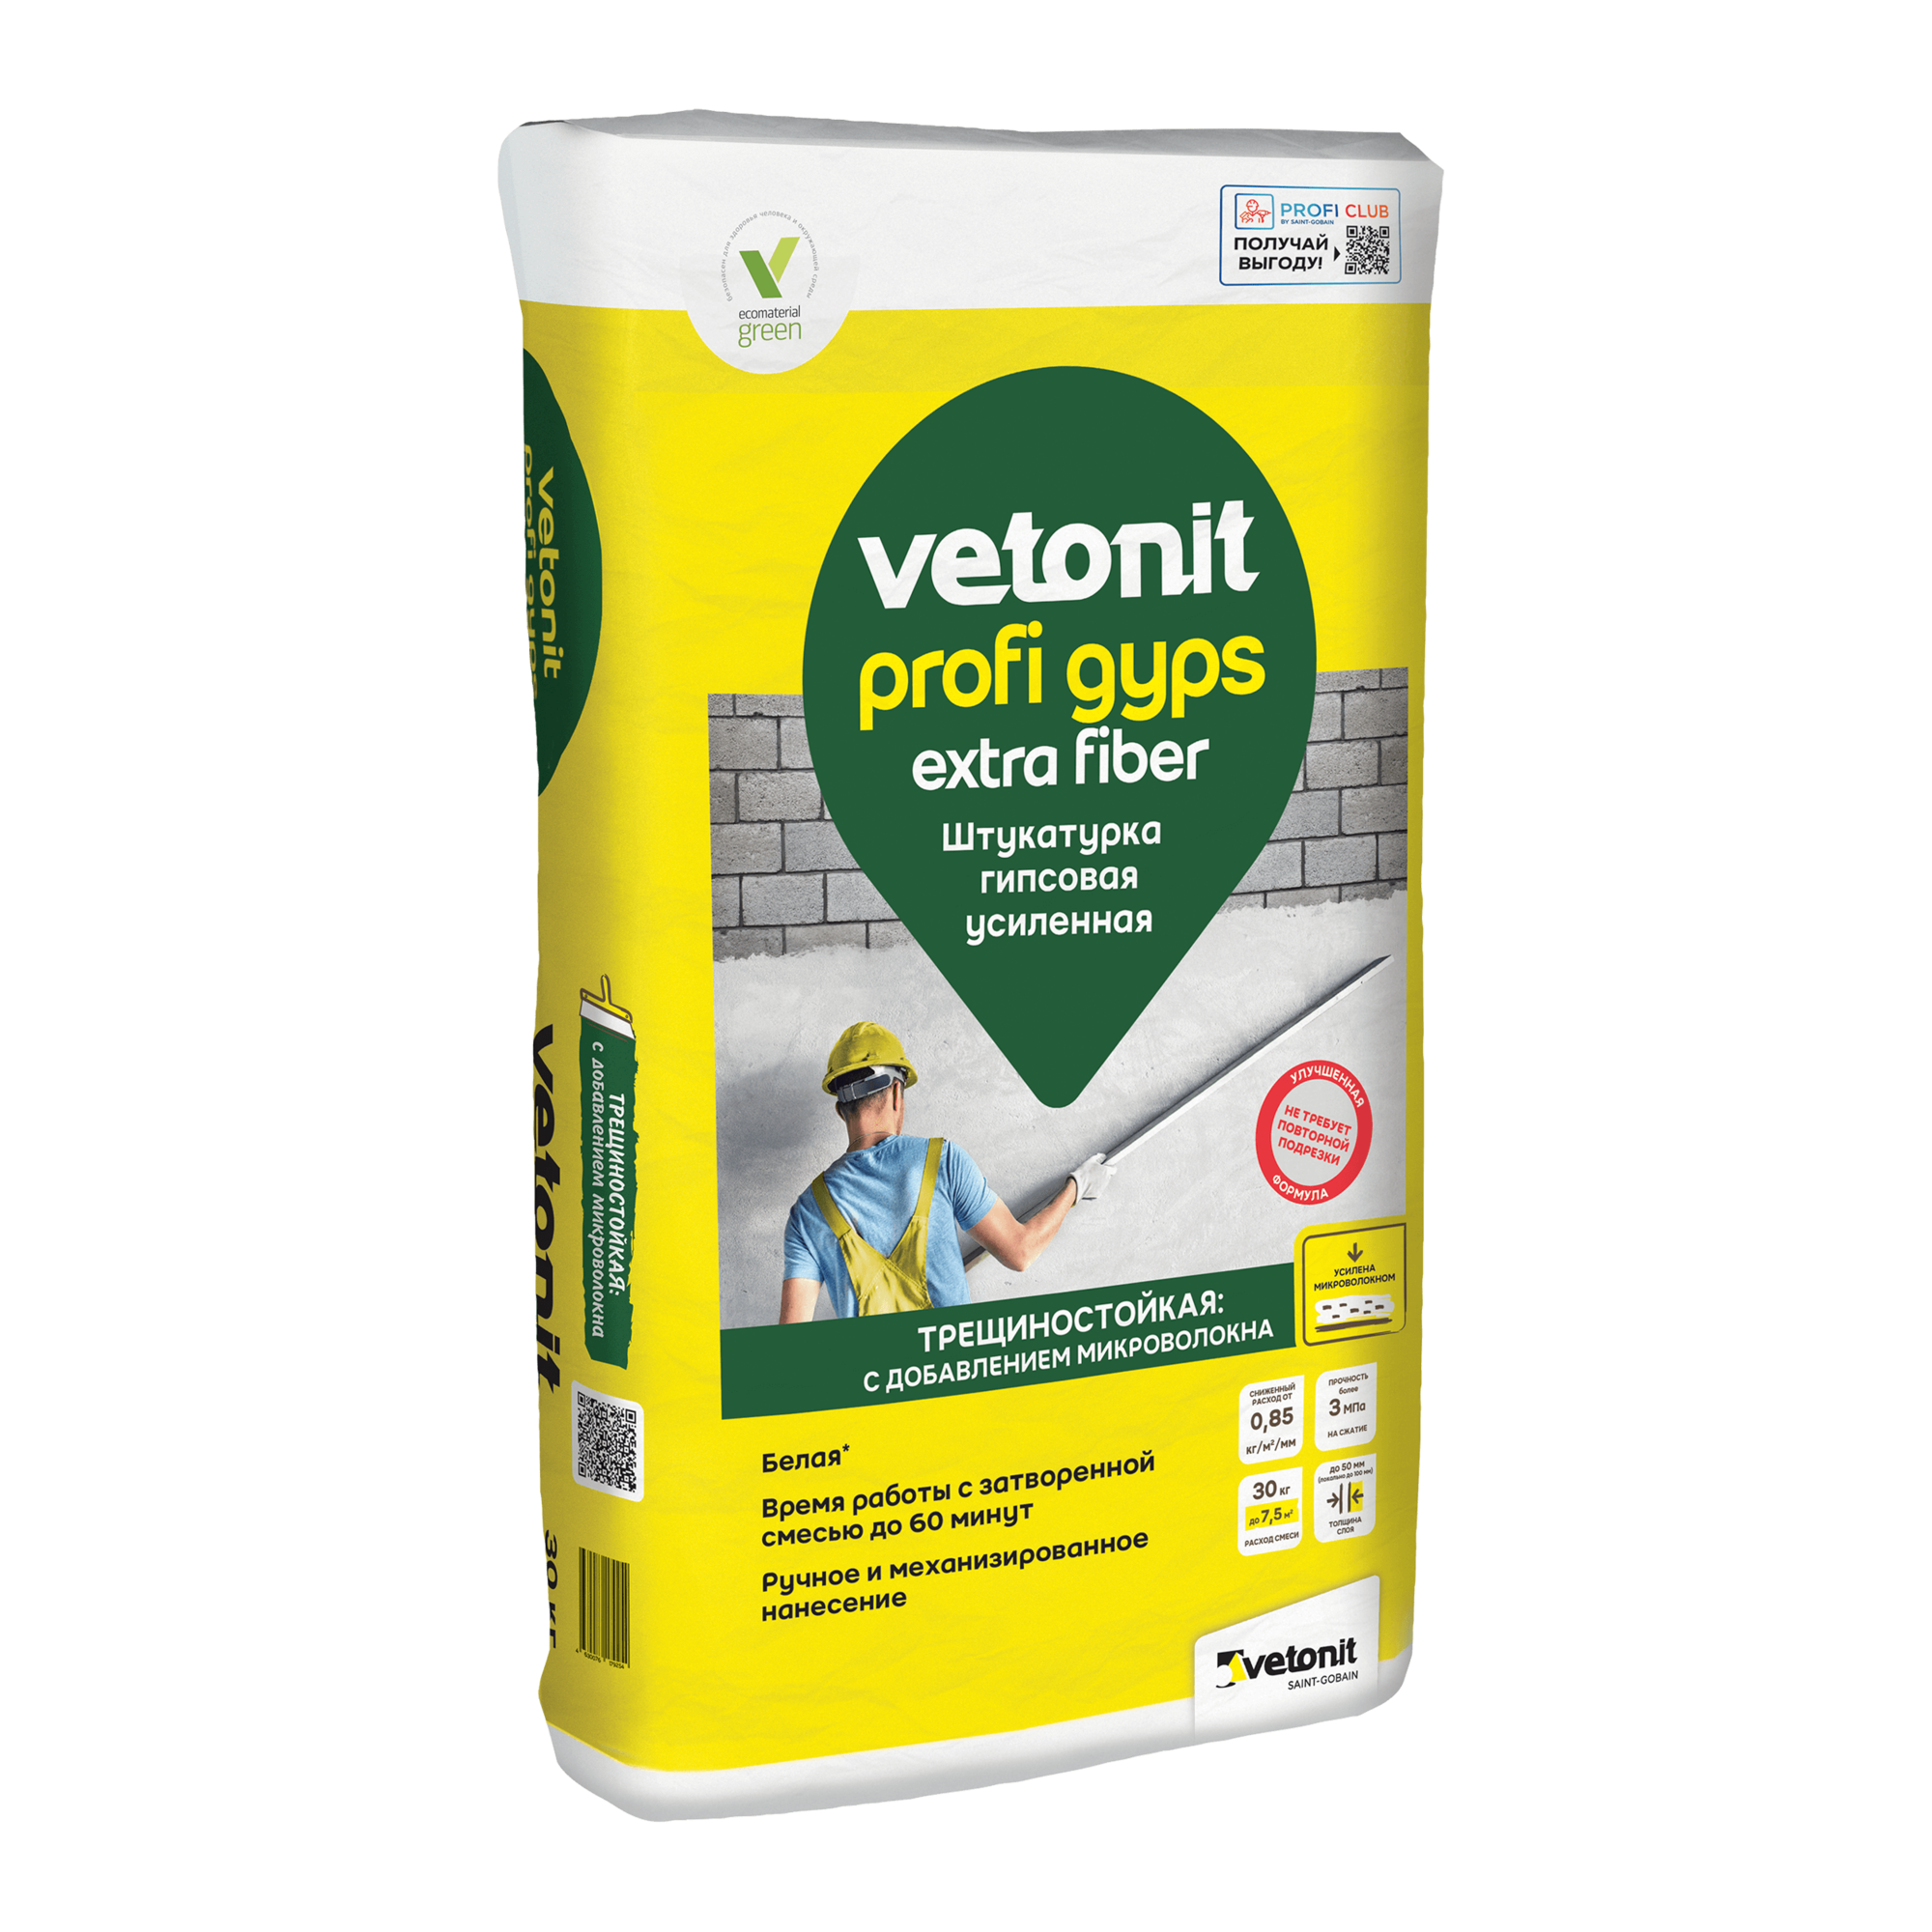 Штукатурка гипсовая усиленная Vetonit extra fiber profi gips, 30 кг(40 шт/пал)